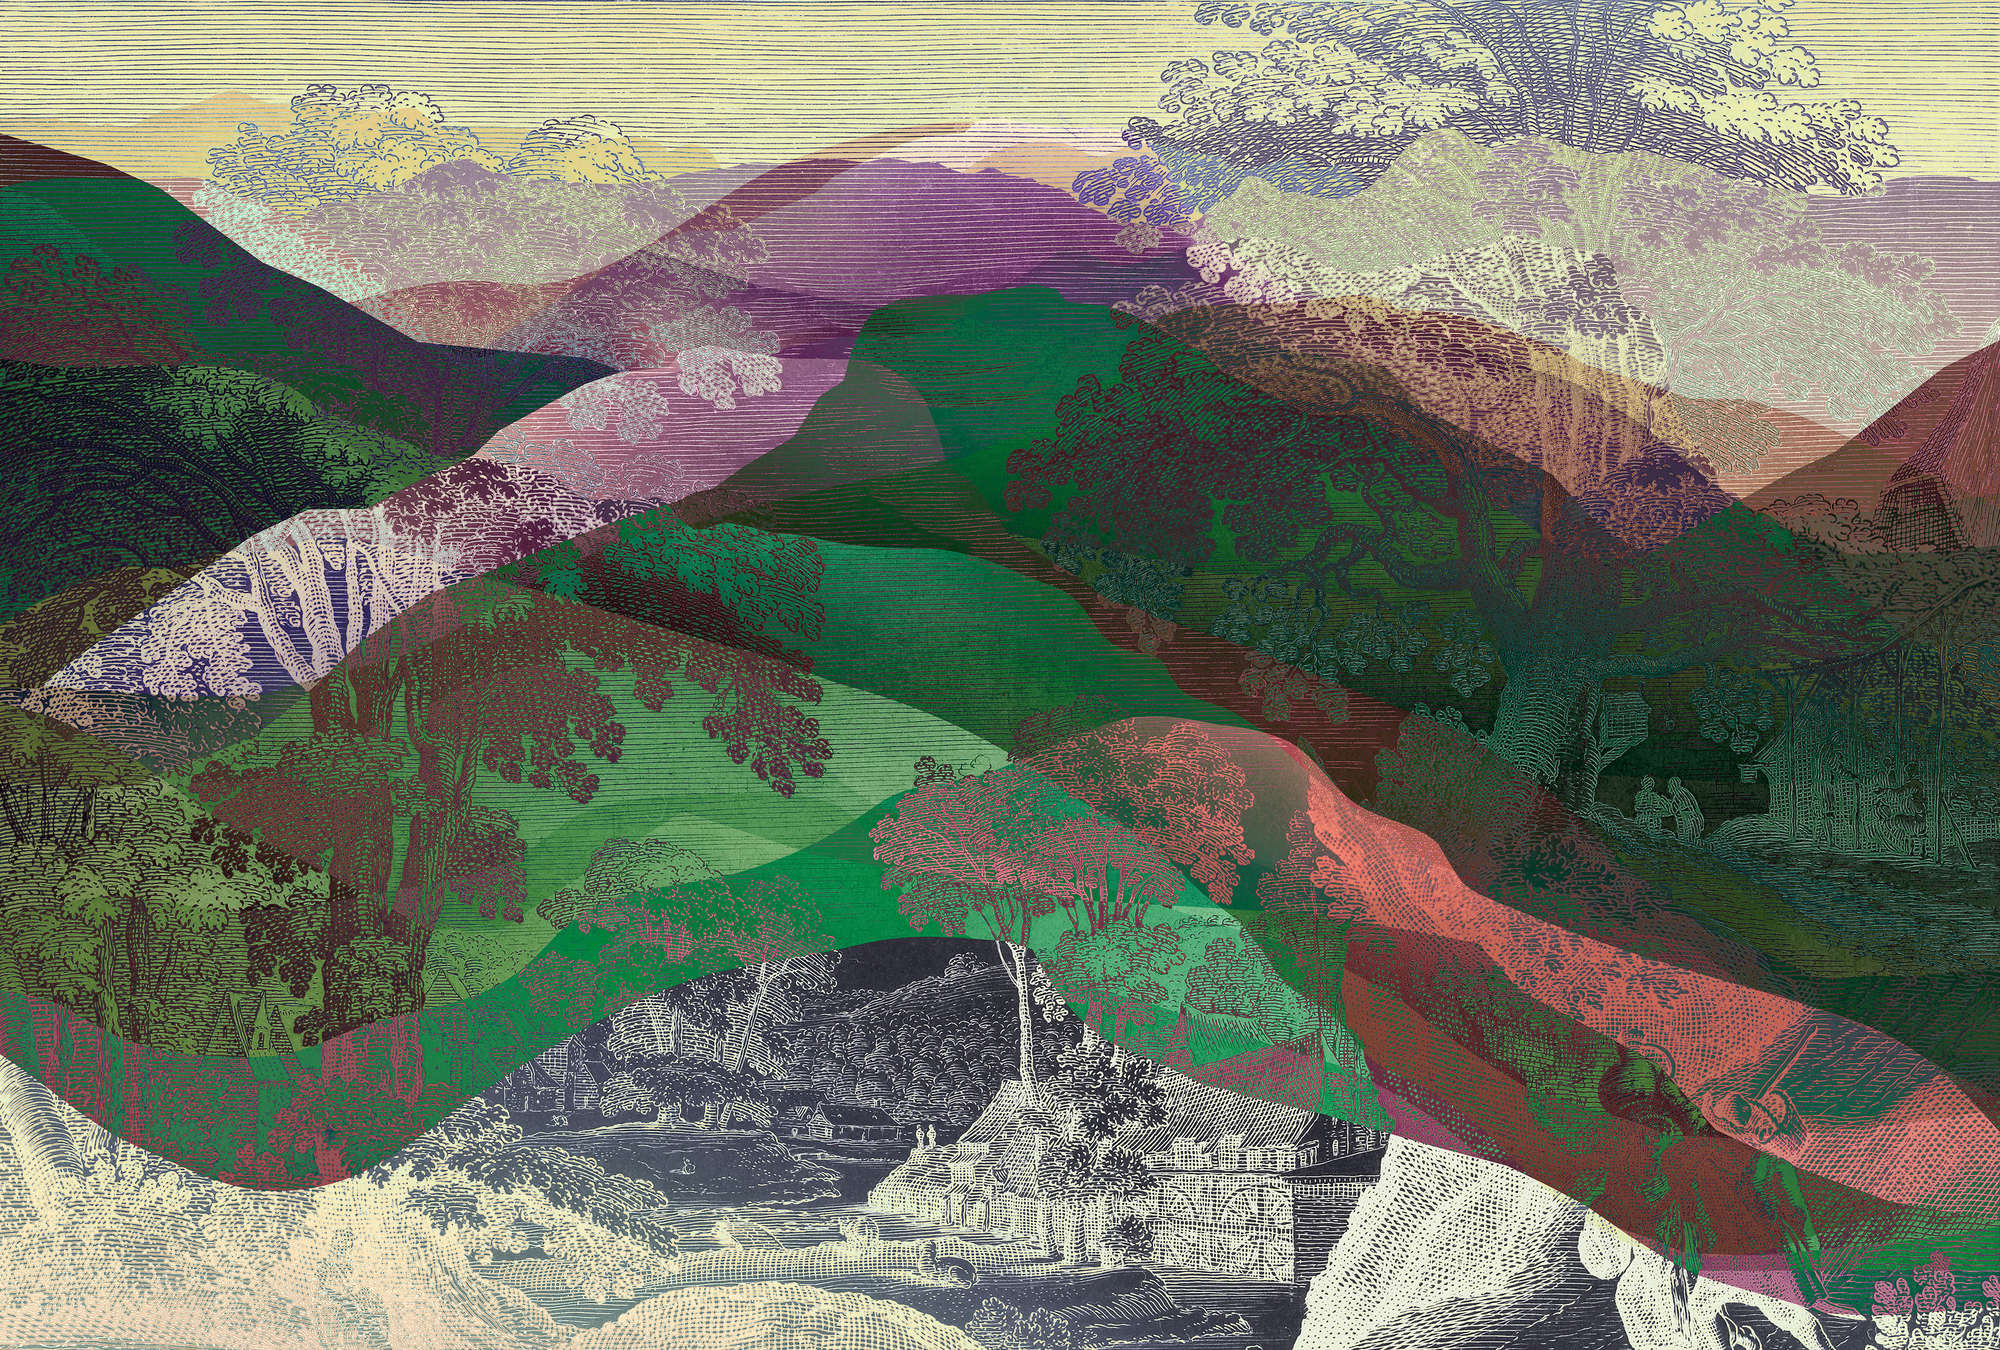             Hidden Valley 1 - Muurschildering Vintage meets Modern Berglandschap
        